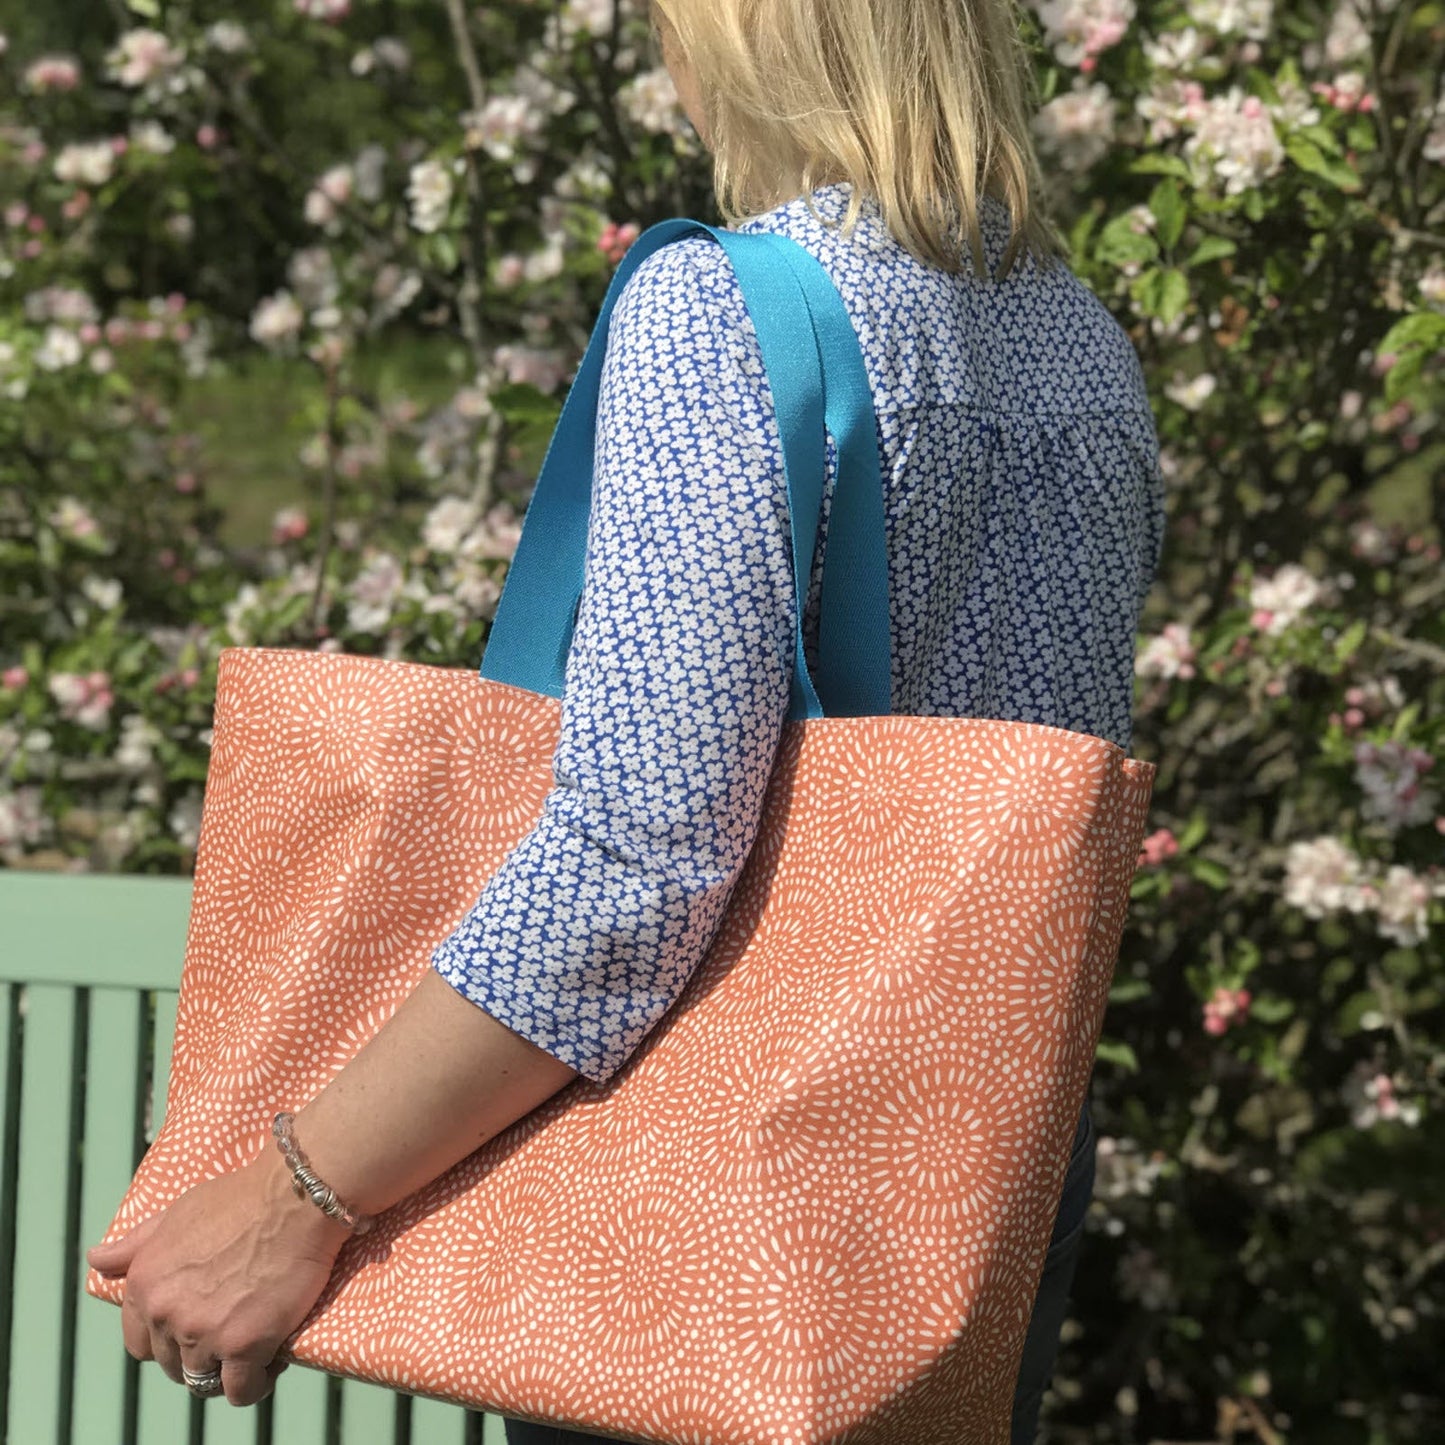 Amber Sunburst Extra Large Bag with New flat Turquoise Handles